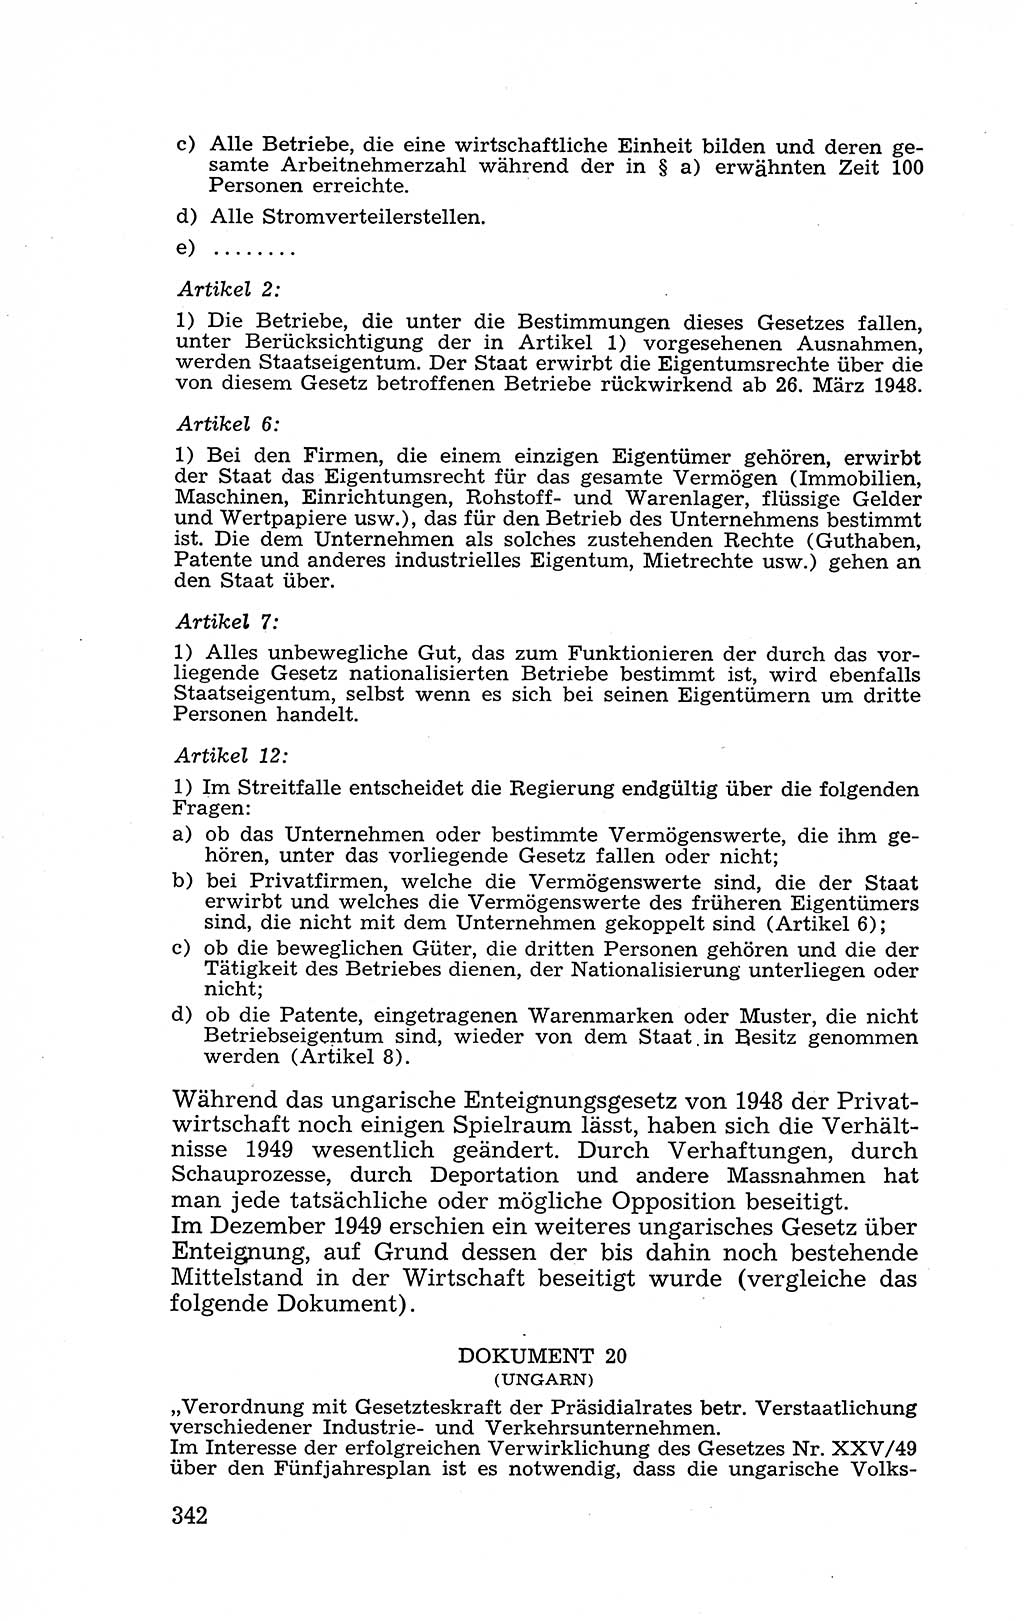 Recht in Fesseln, Dokumente, Internationale Juristen-Kommission [Bundesrepublik Deutschland (BRD)] 1955, Seite 342 (R. Dok. IJK BRD 1955, S. 342)